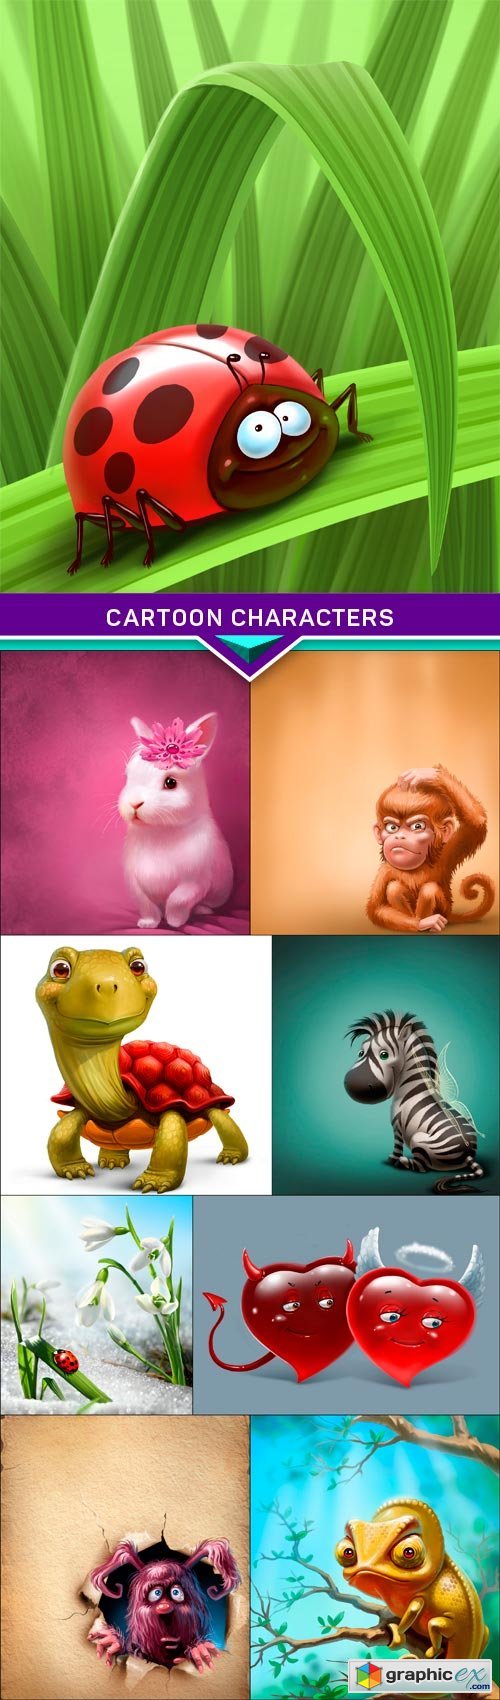 Cartoon characters 9X JPEG